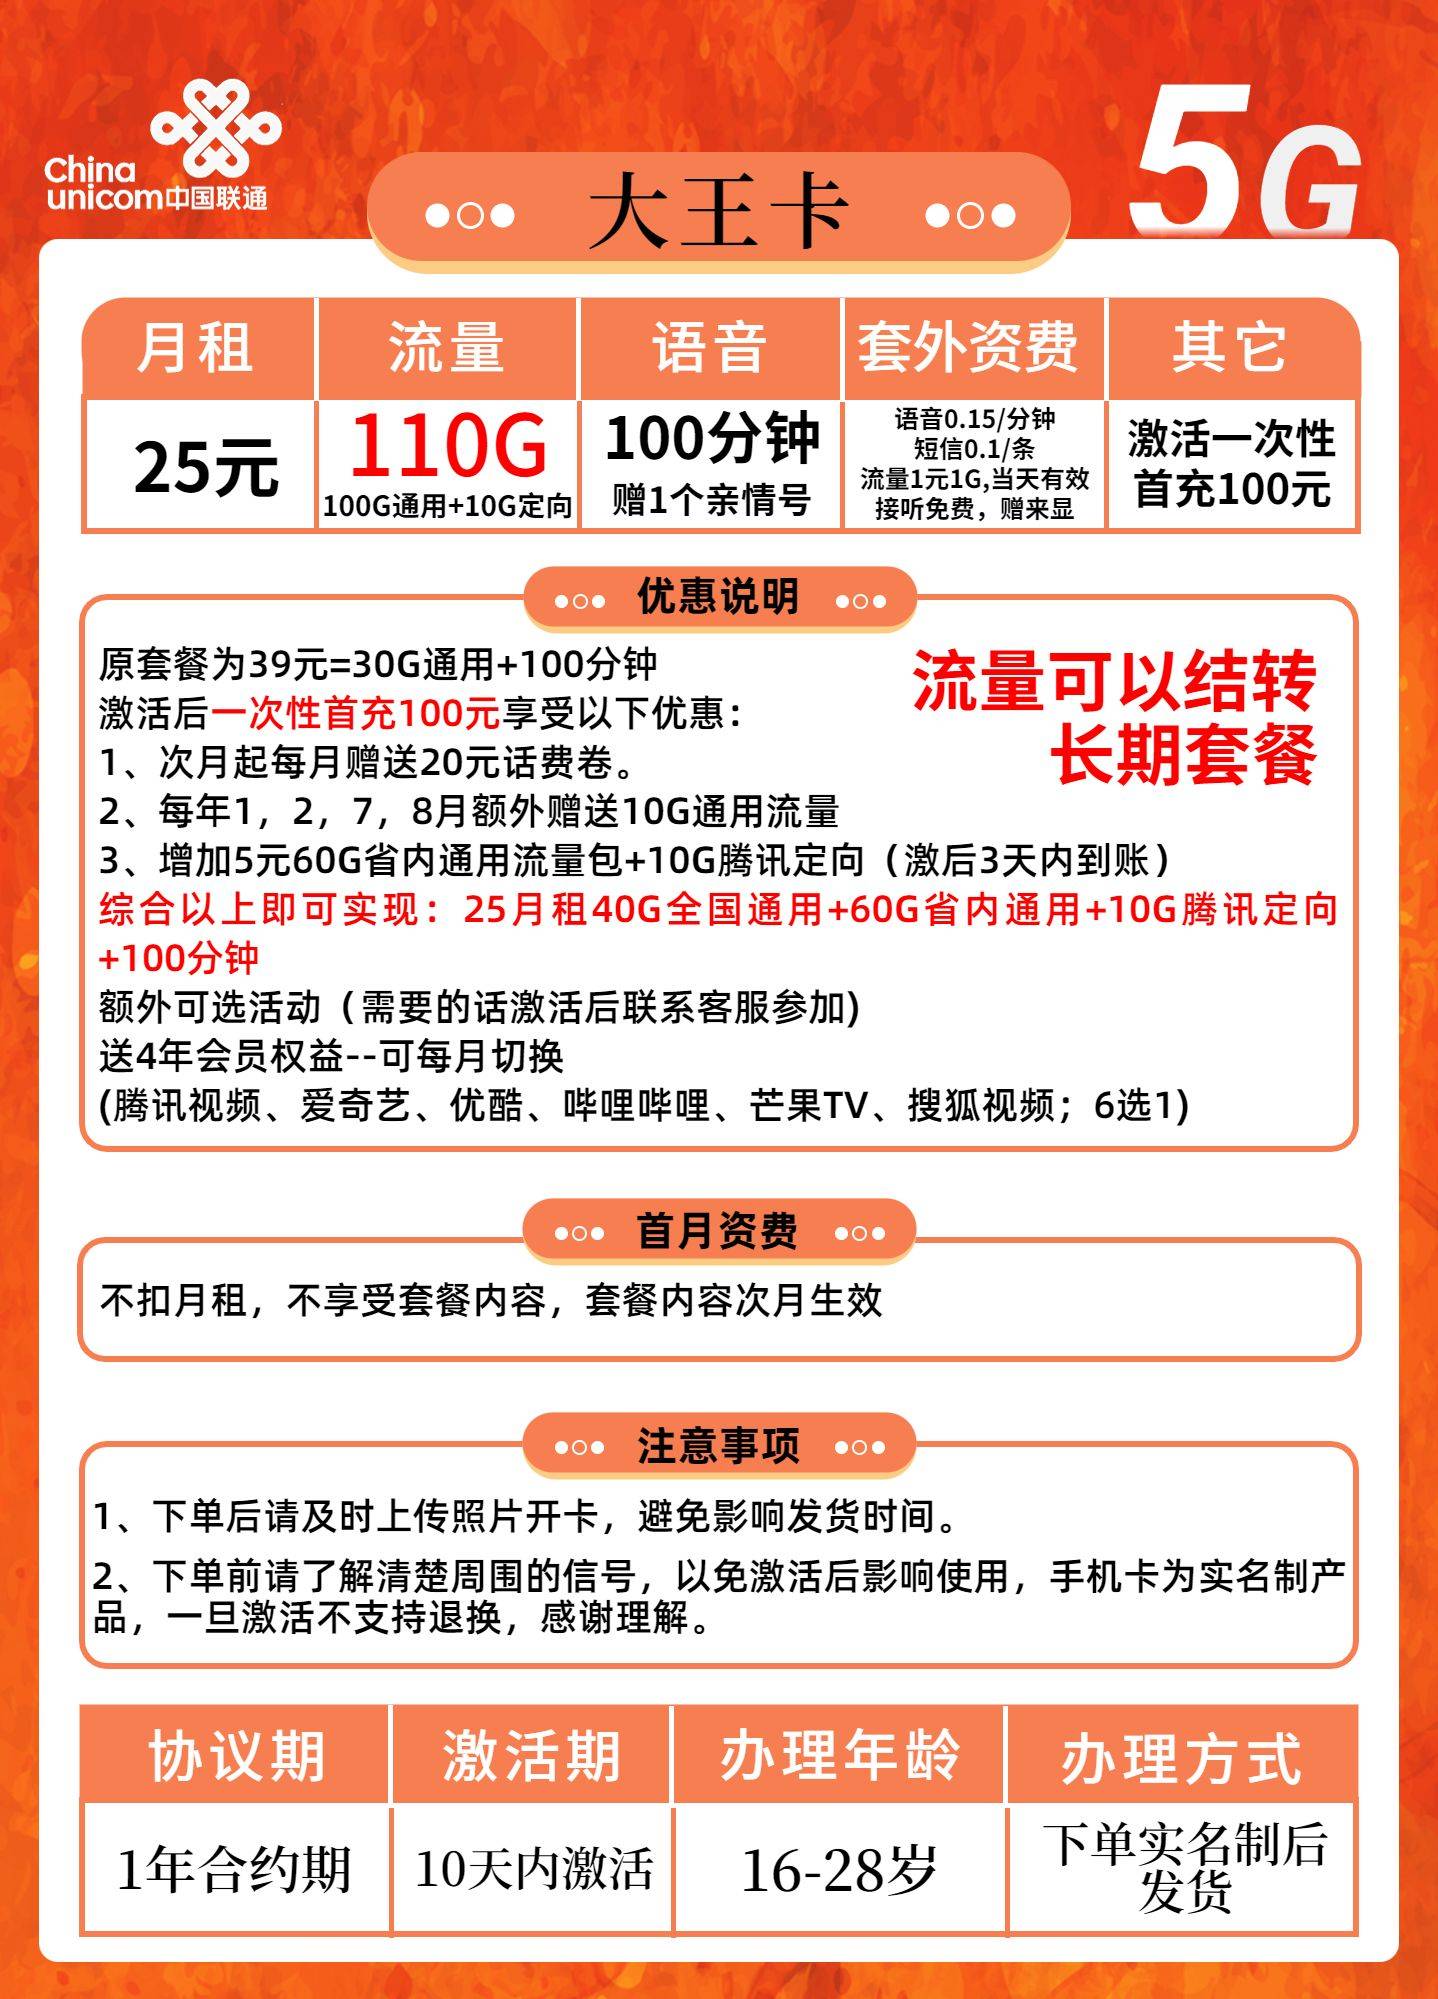 安徽省内联通大王卡25元包110G通用+10G定向+100分钟+1个亲情号+视频会员